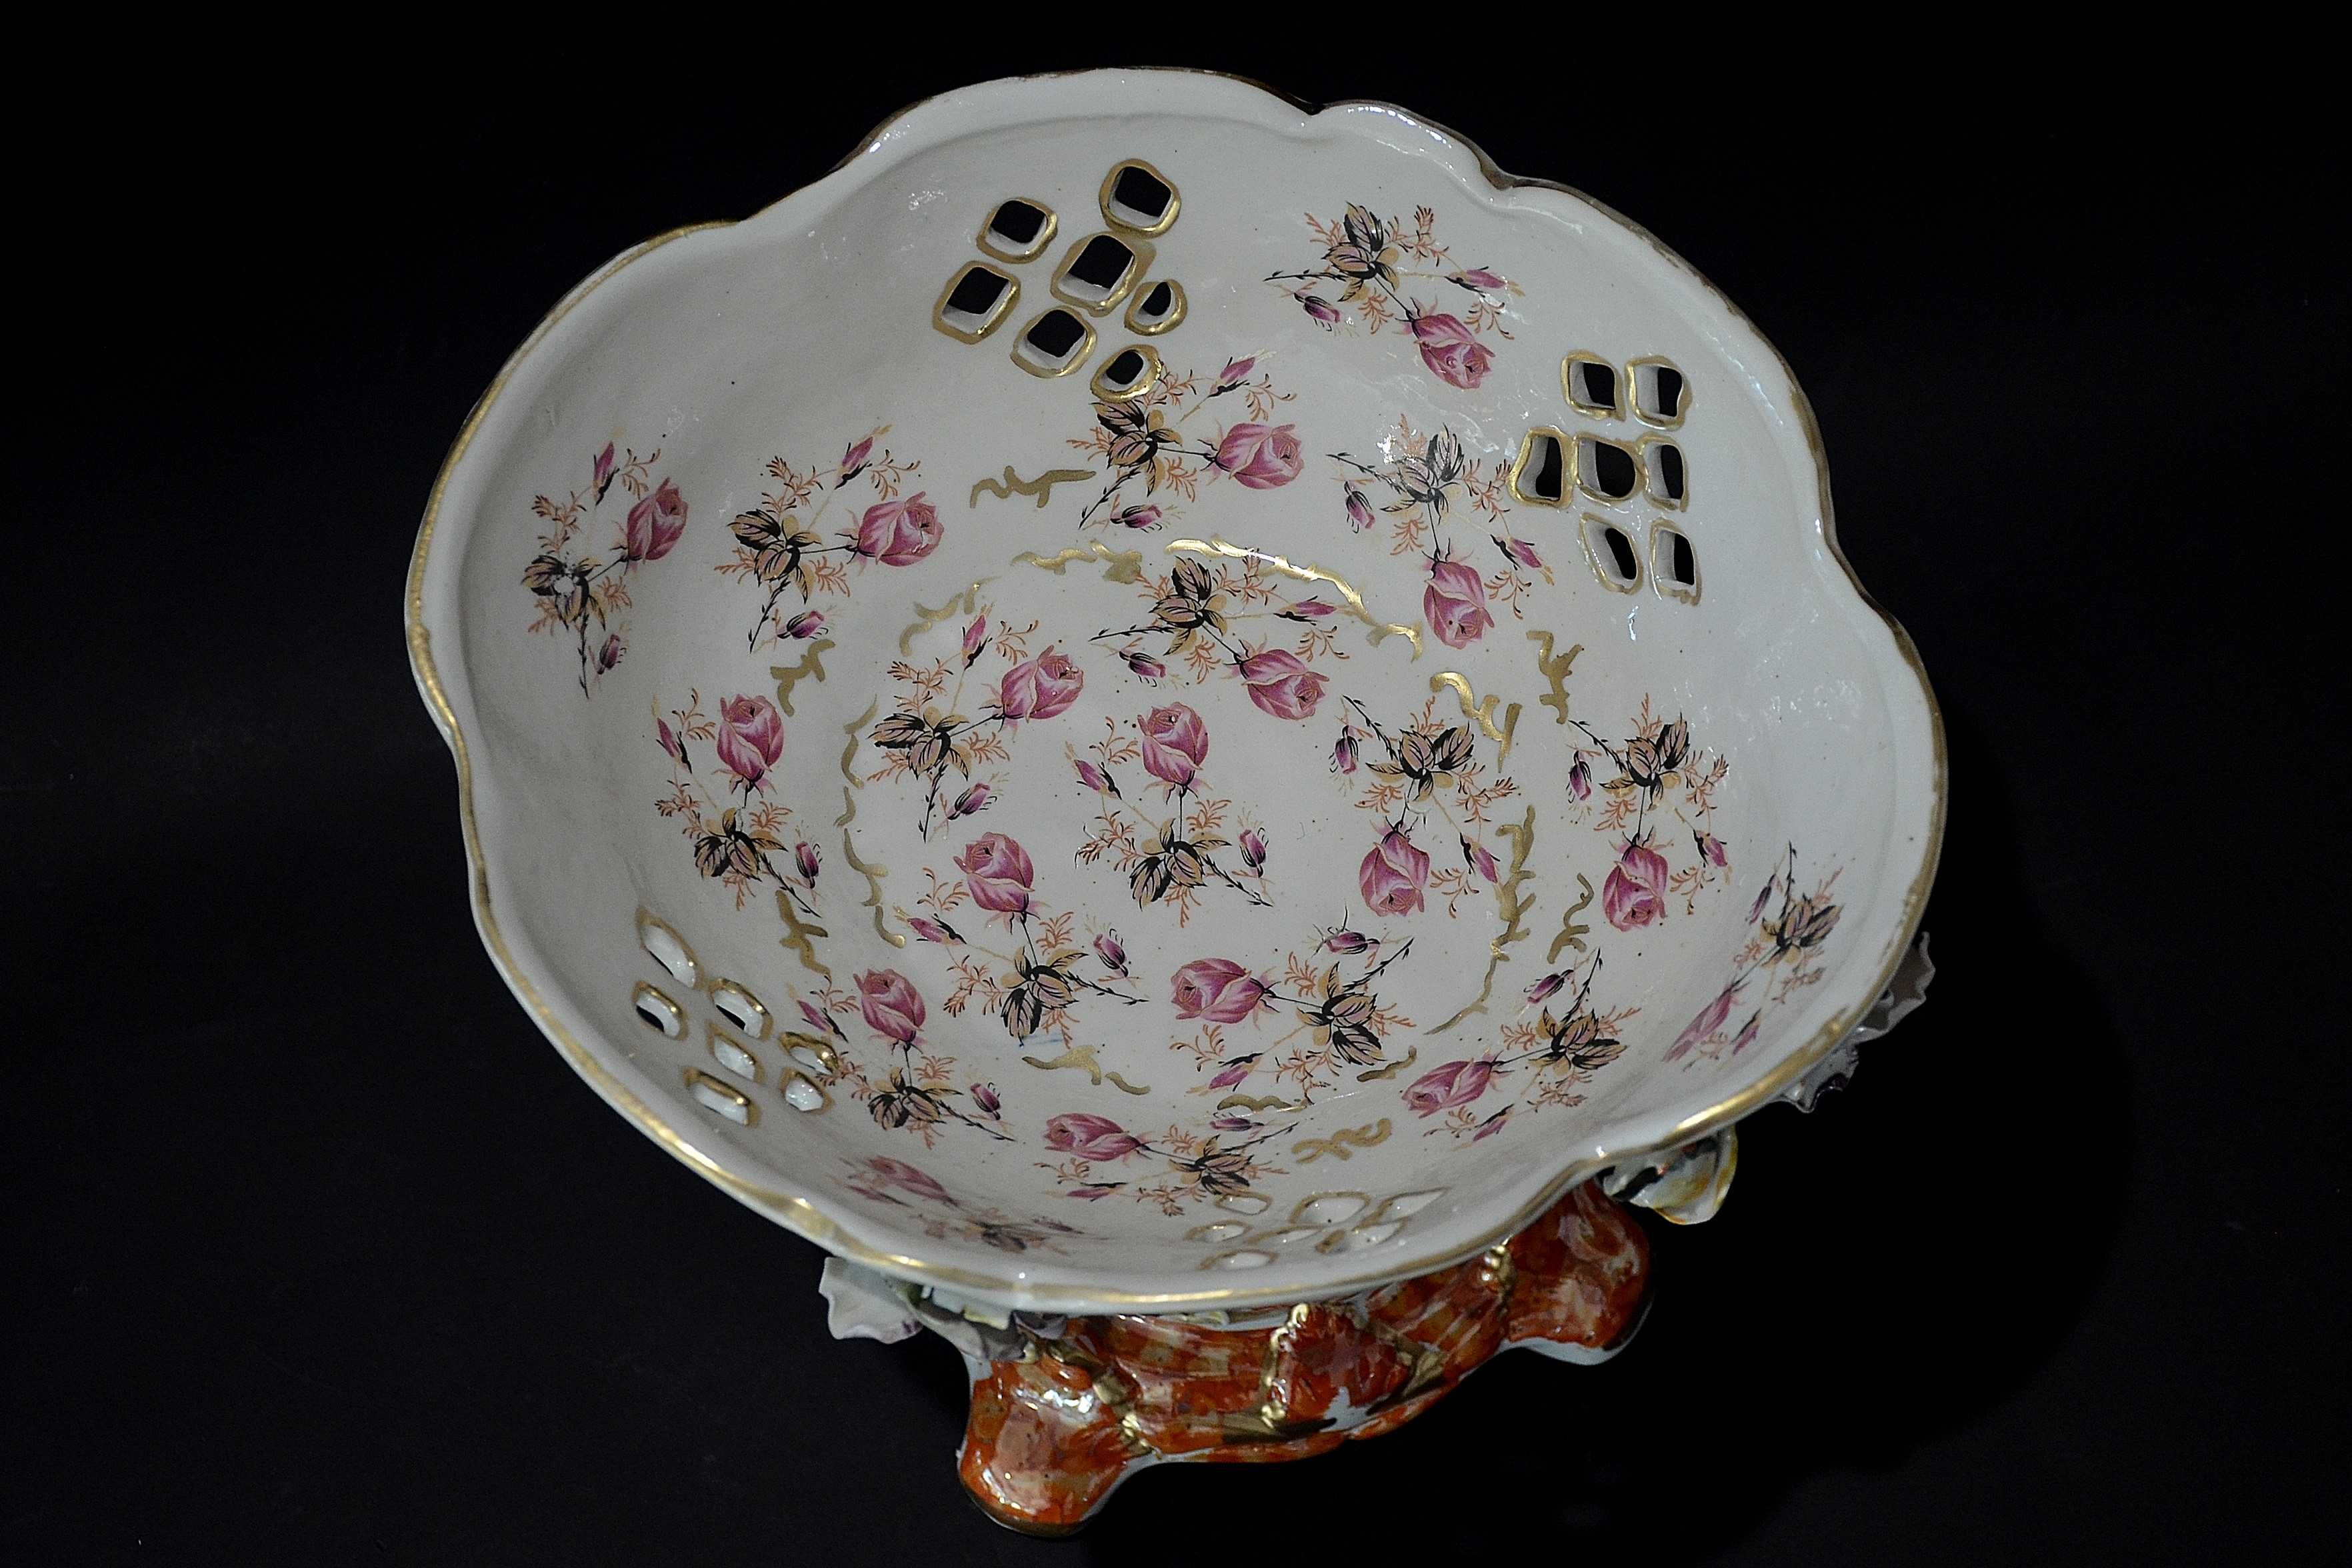 Porcelana Roceram owocarka Florina wys. 26cm do kolekcji